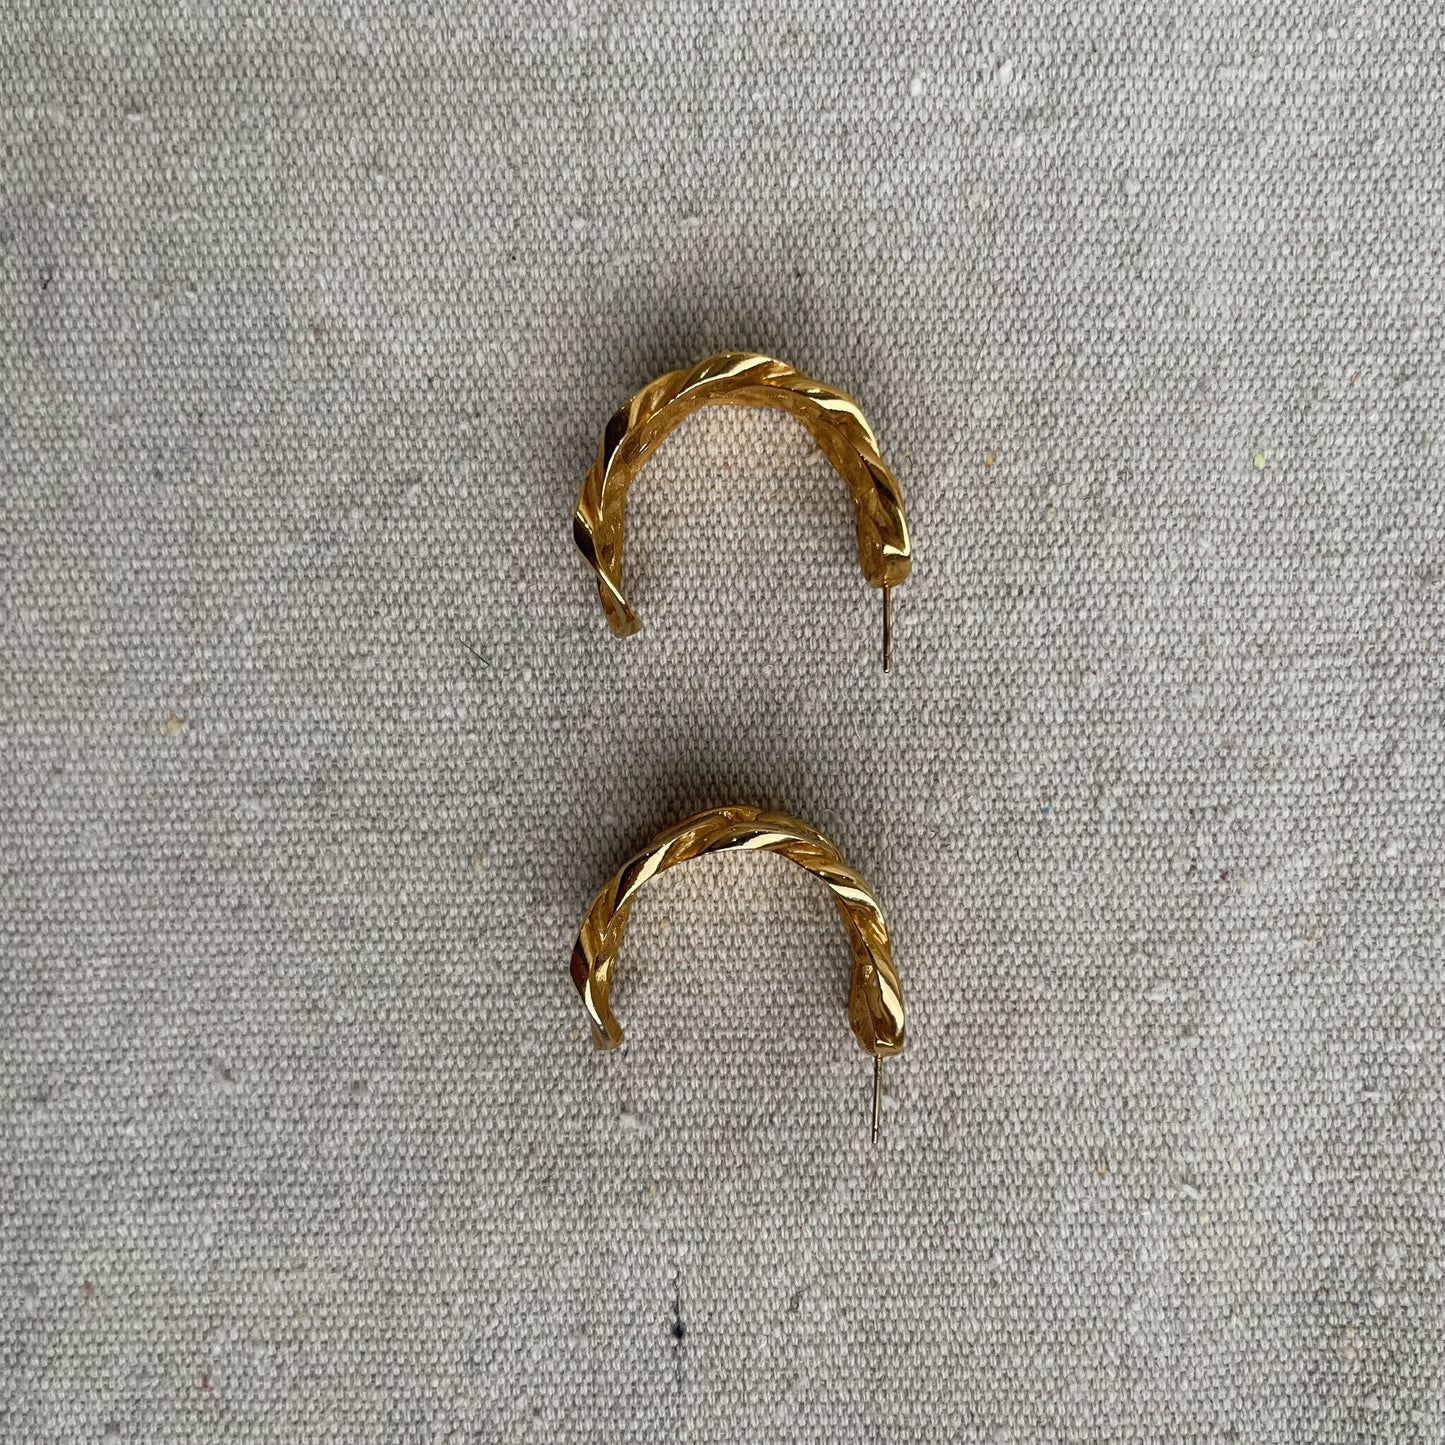 link earring, golden